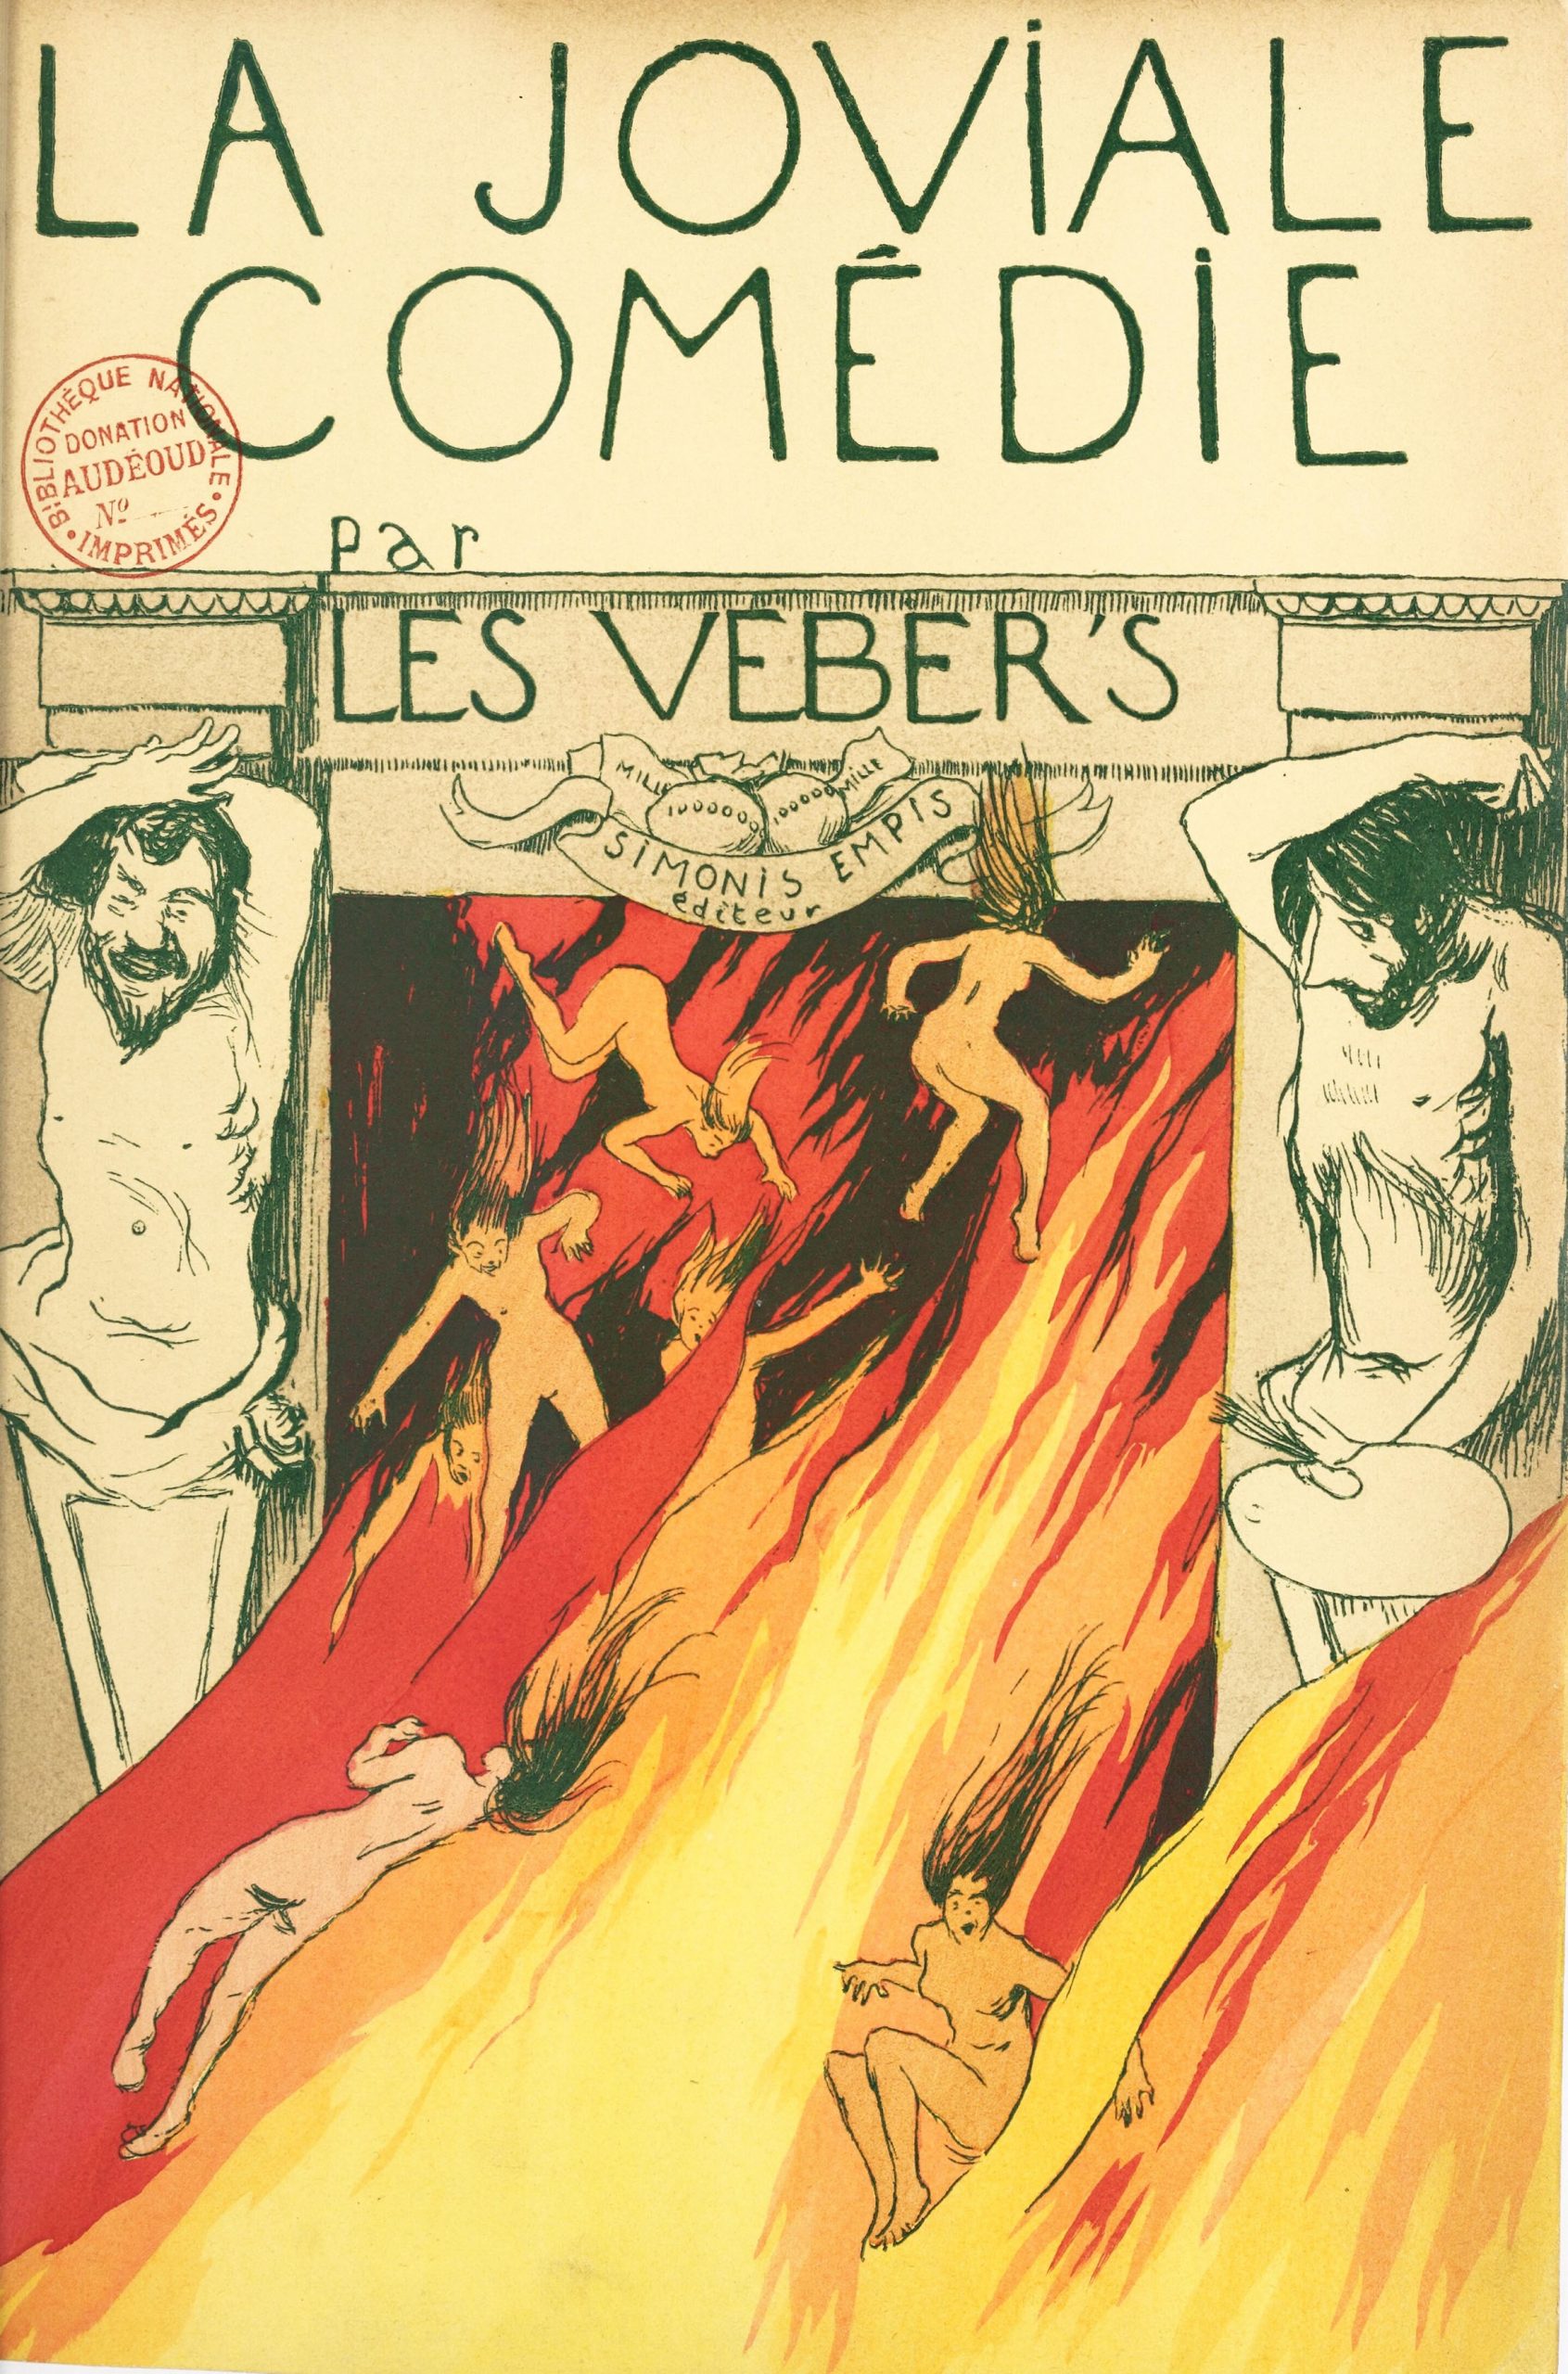 La joviale comédie / par les Veber's - 1896 ©Gallica